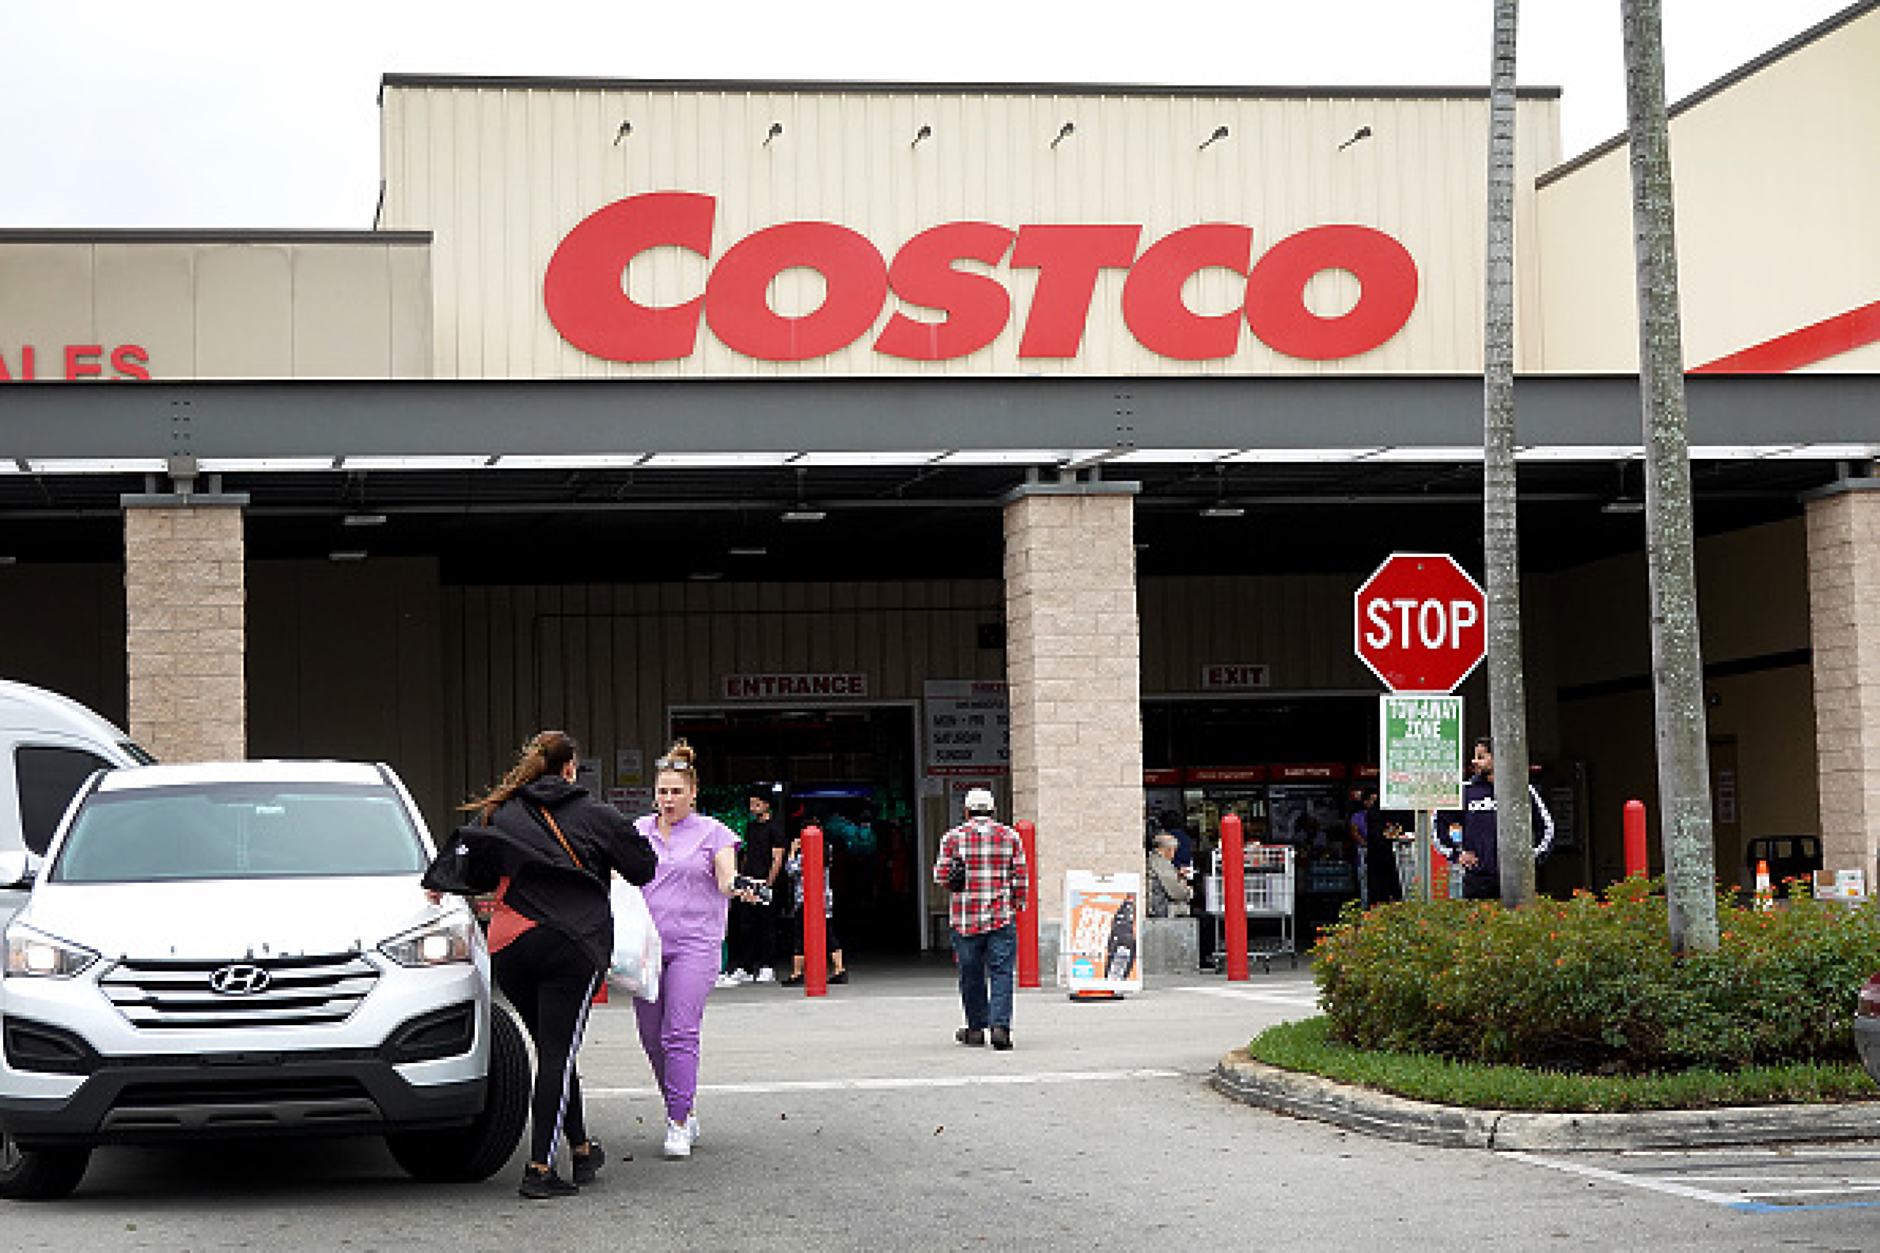 Най-голямата верига складови магазини Costco в САЩ удря с по-висока такса 52 млн. клиенти